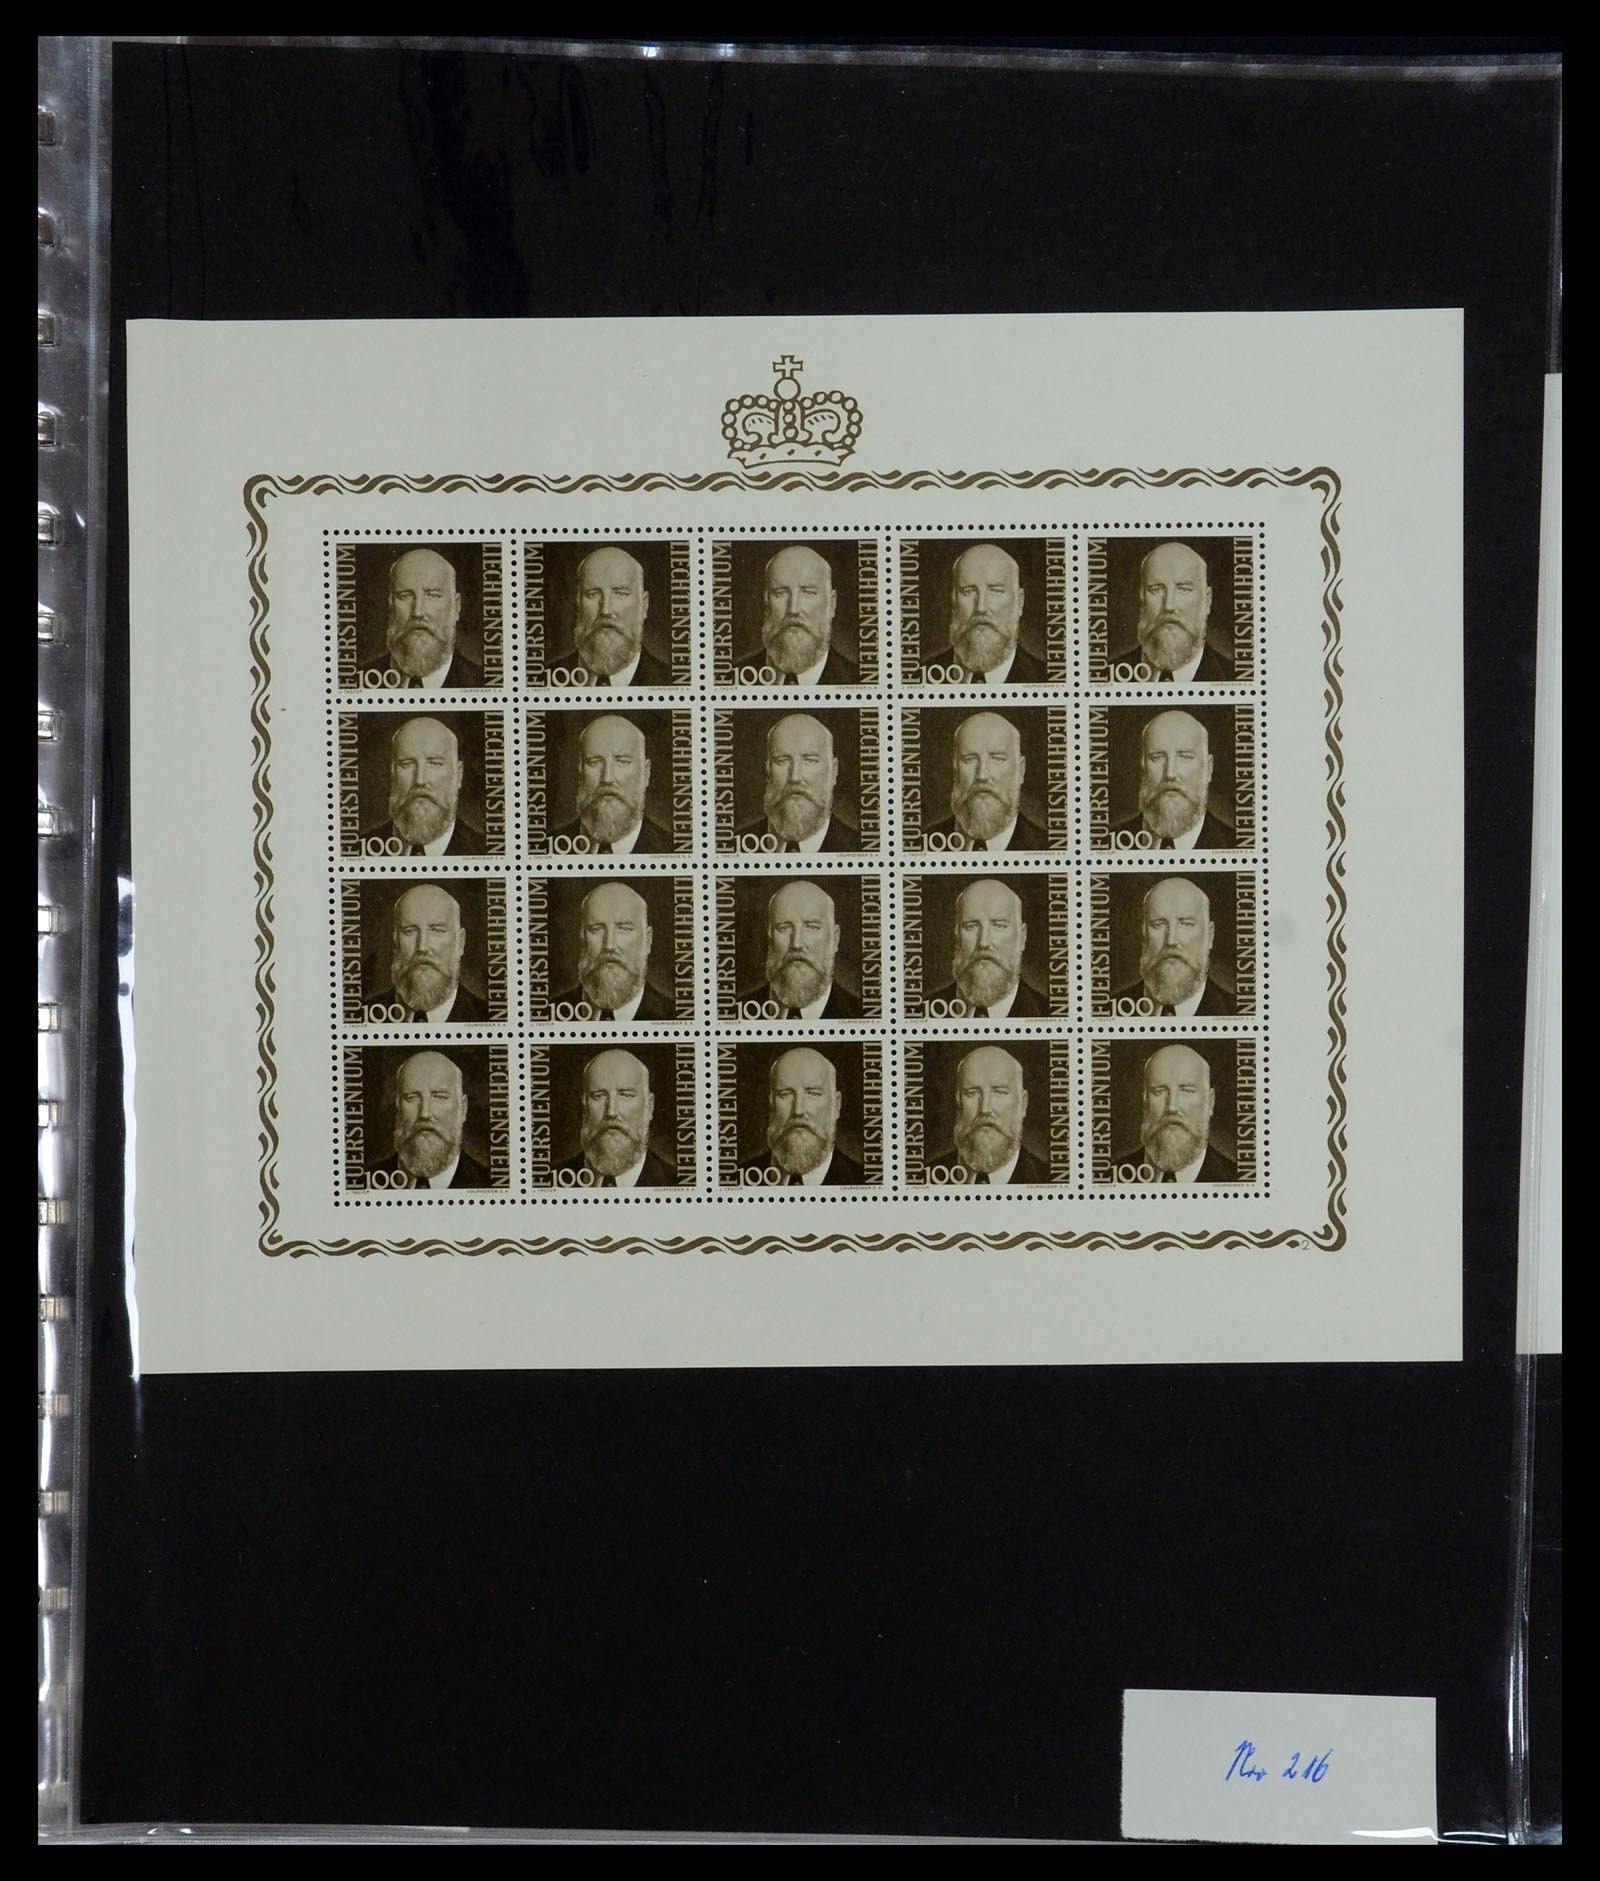 36280 033 - Stamp collection 36280 Liechtenstein souvenir sheets and sheetlets 1934-